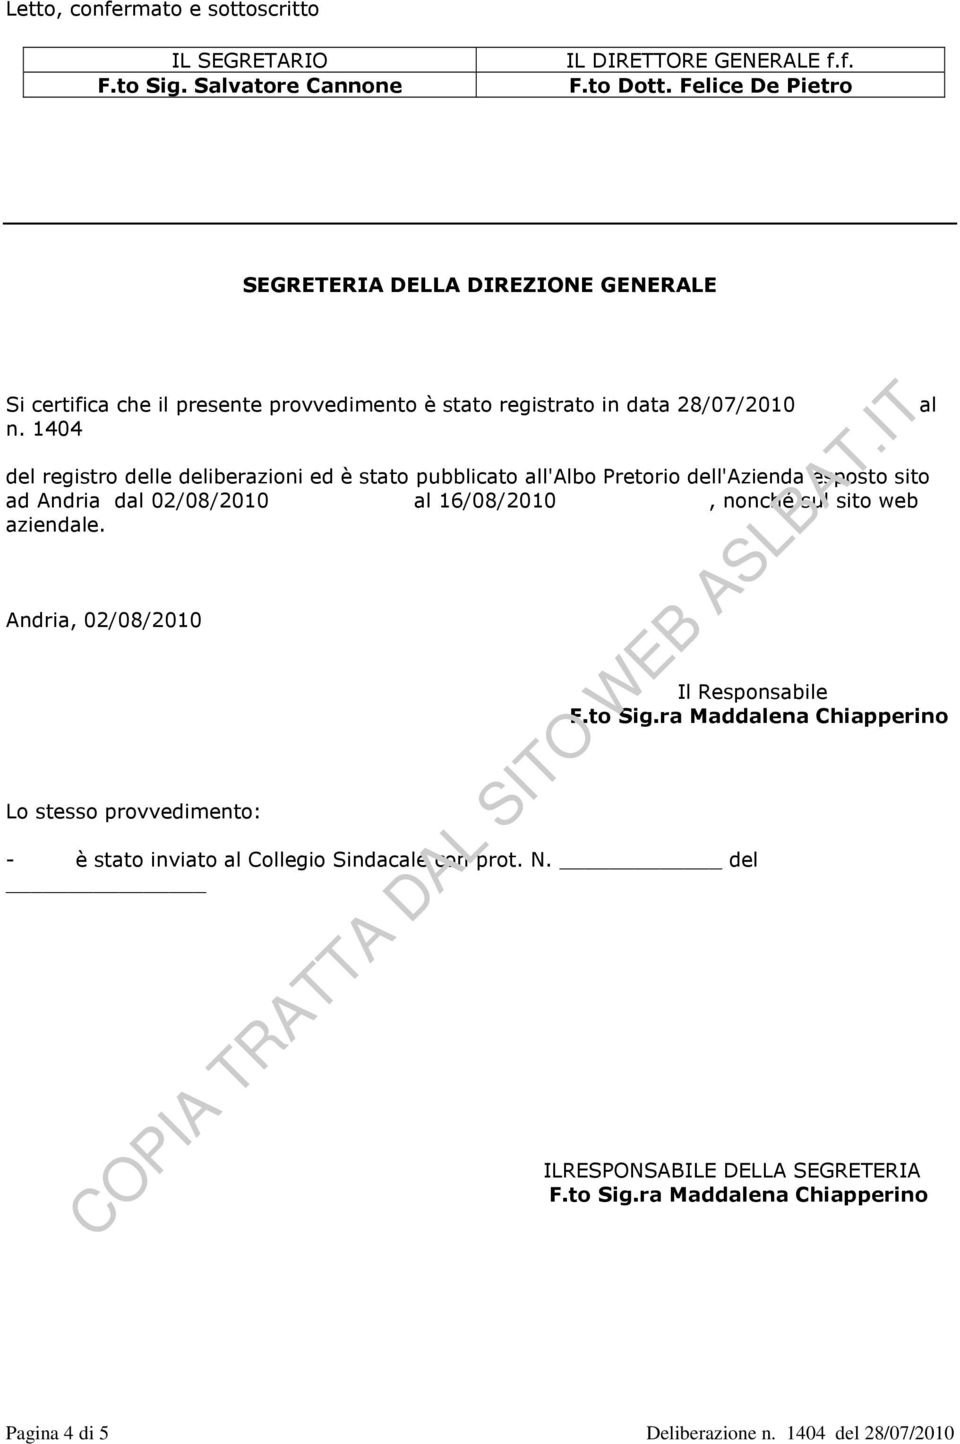 1404 del registro delle deliberazioni ed è stato pubblicato all'albo Pretorio dell'azienda esposto sito ad Andria dal 02/08/2010 al 16/08/2010, nonché sul sito web aziendale.